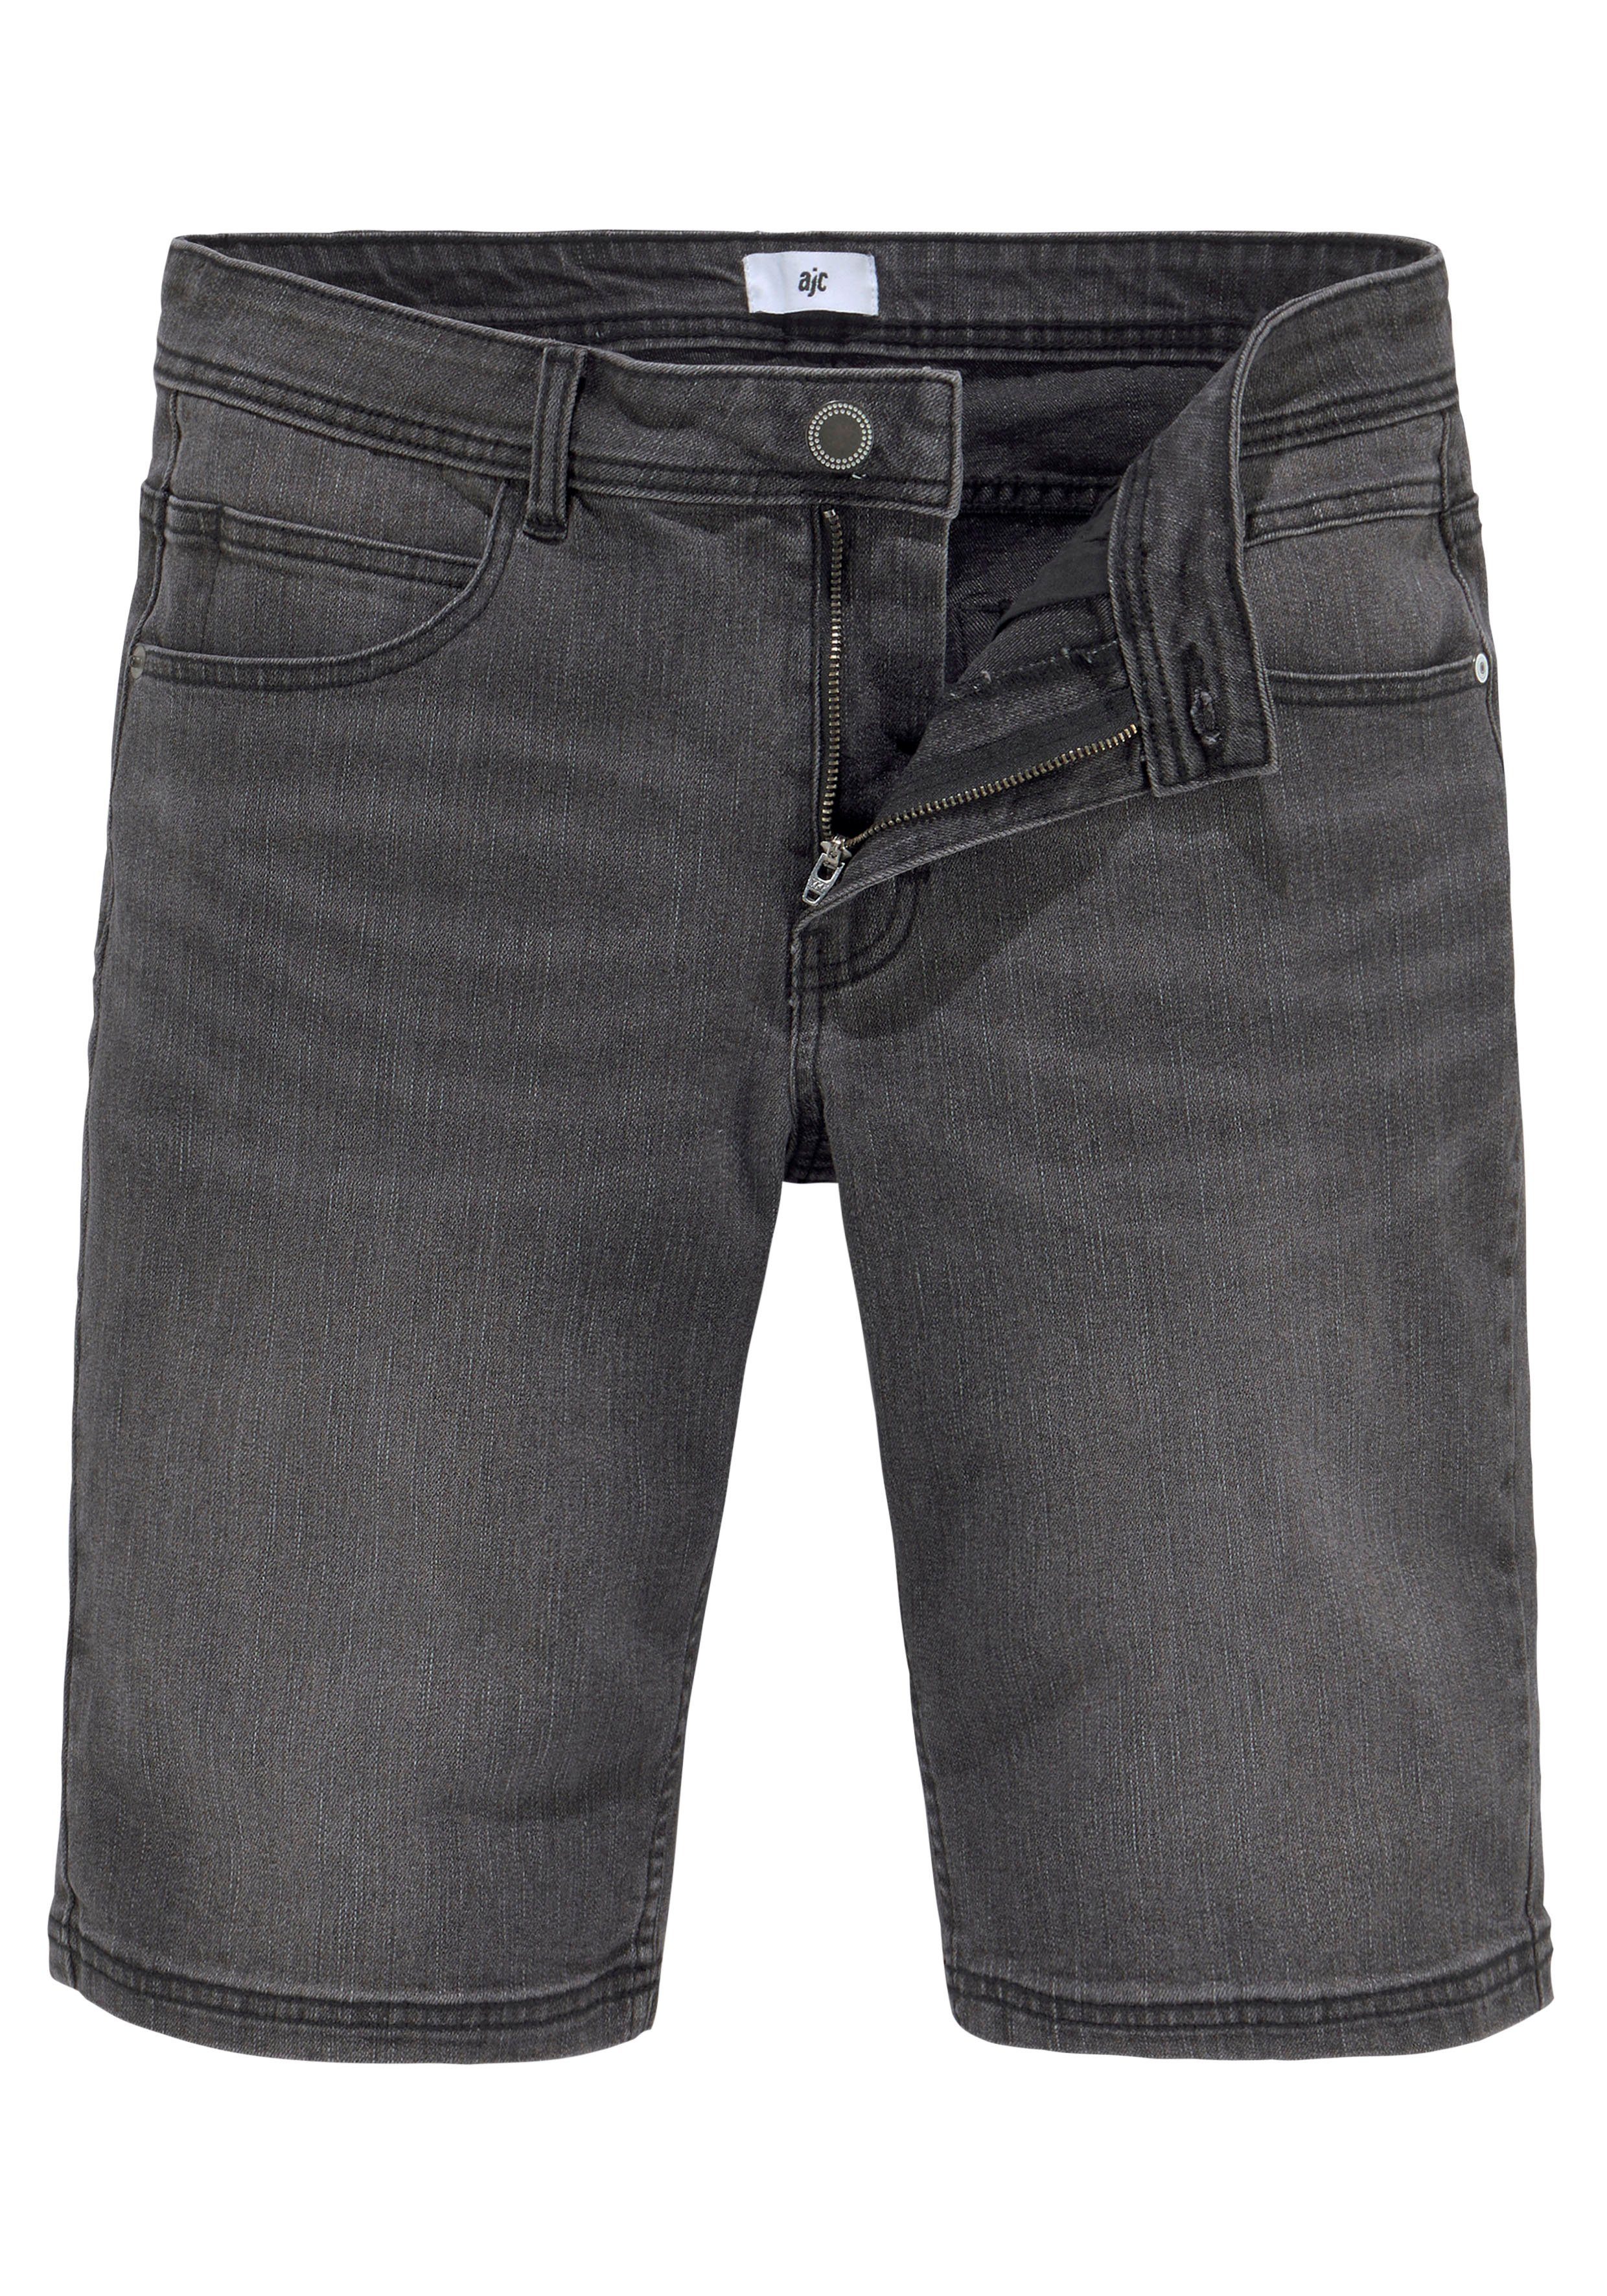 AJC Shorts 5-Pocket-Stil im dark grey